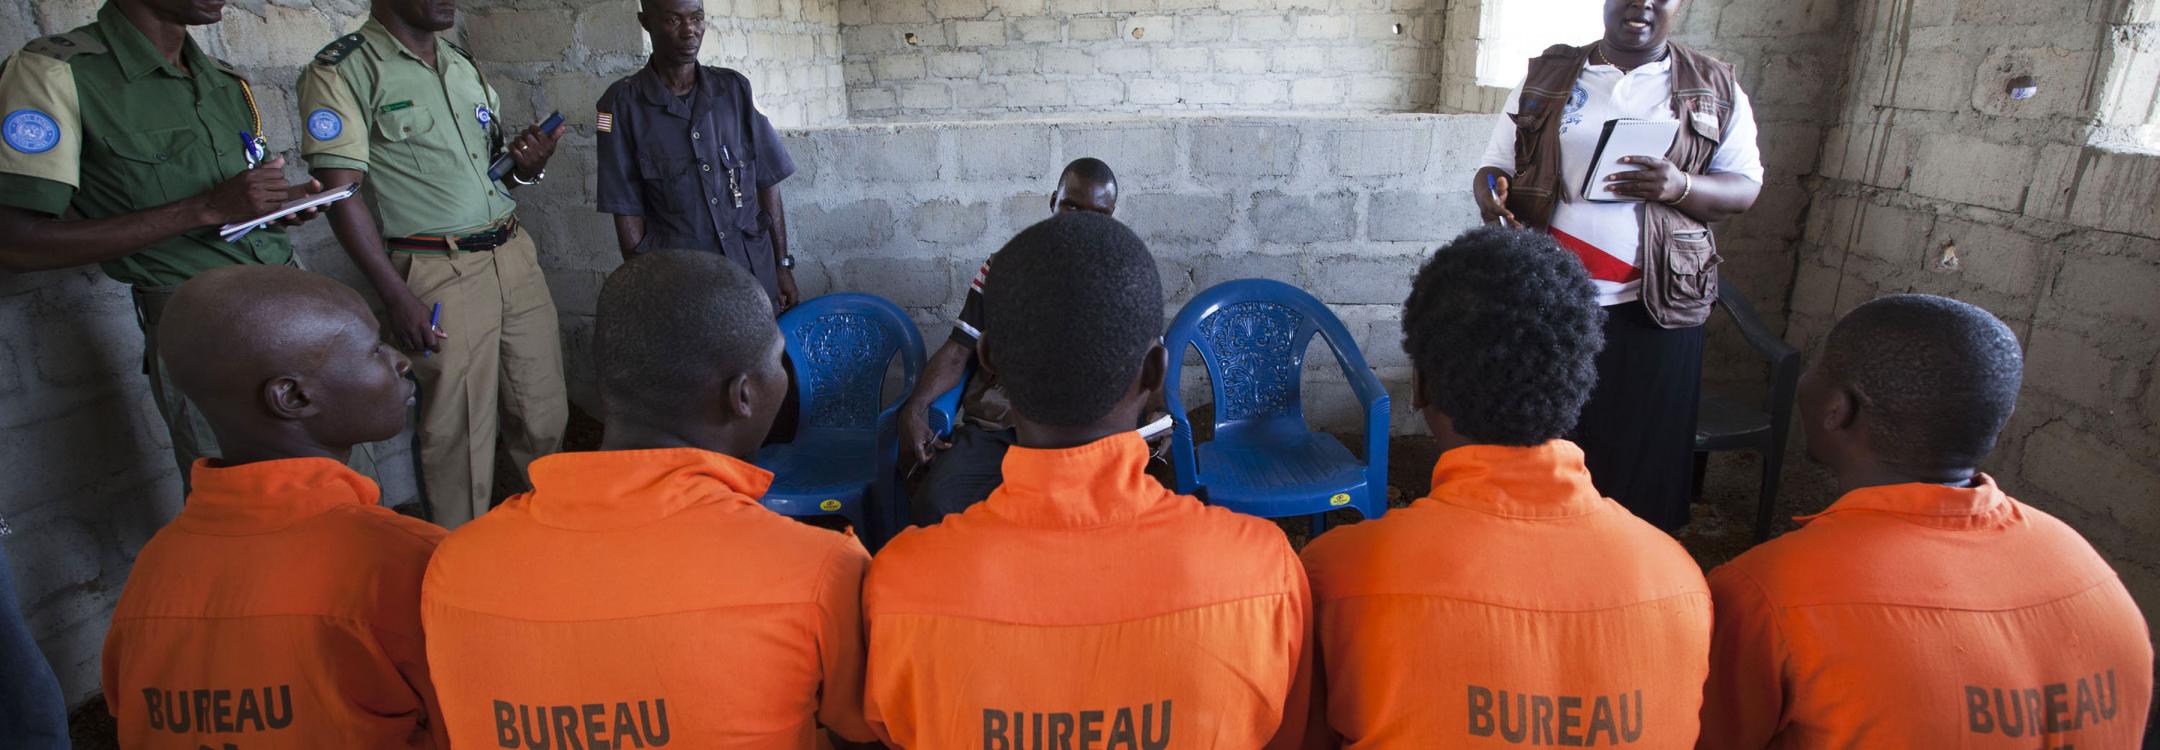 Liberia prison monitors UN photo Staton Winter.jpg